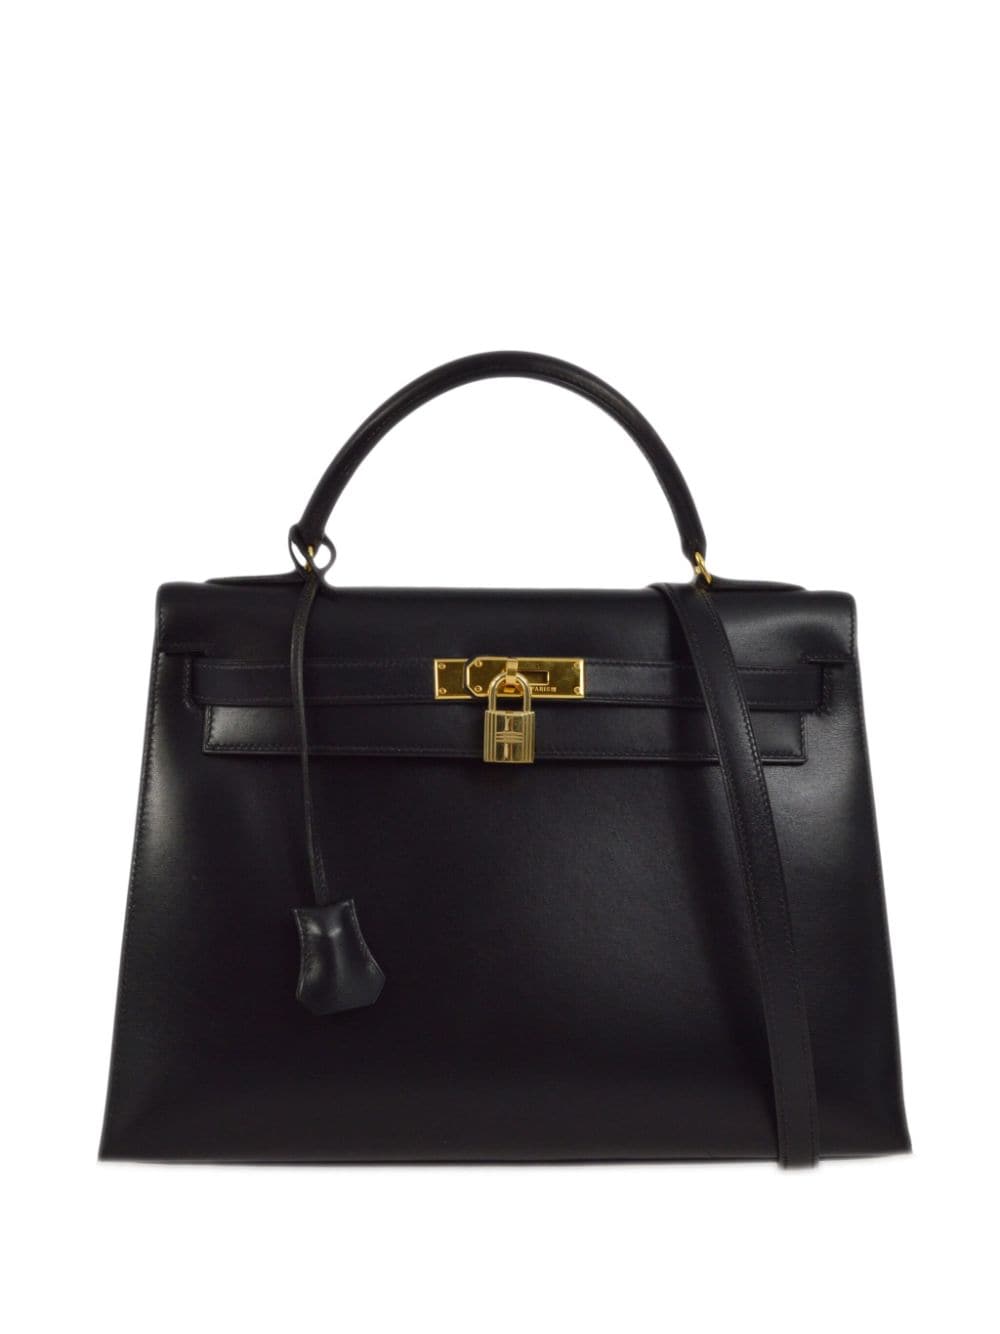 Hermès Pre-Owned 1971 Kelly 32 Sellier two-way handbag - Black von Hermès Pre-Owned